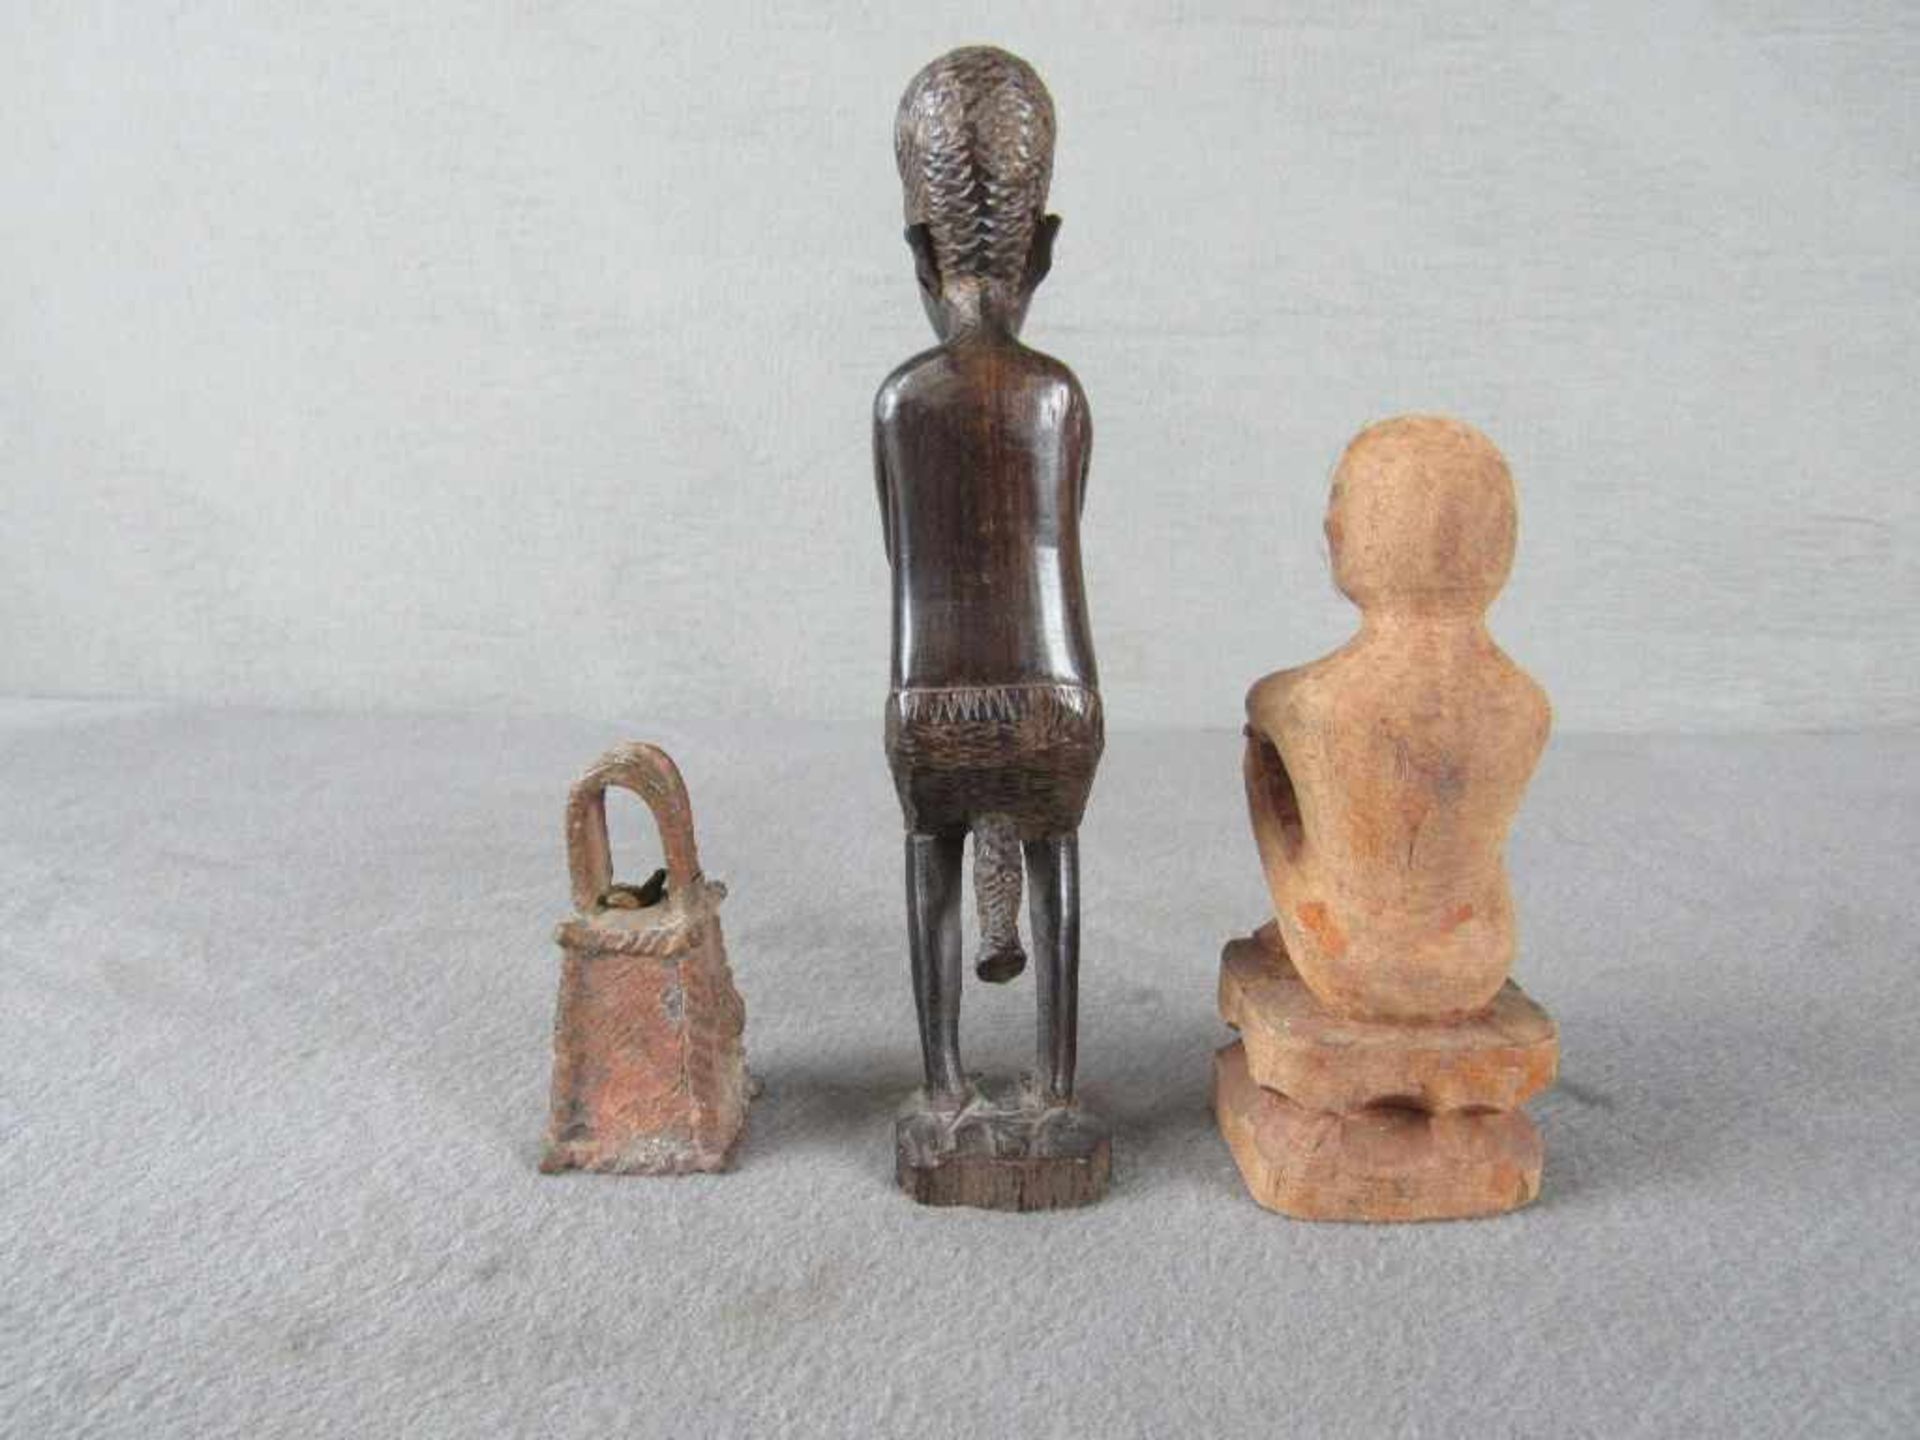 Drei antike afrikanische Skulpturen von 8-19cm- - -20.00 % buyer's premium on the hammer price19. - Bild 3 aus 3